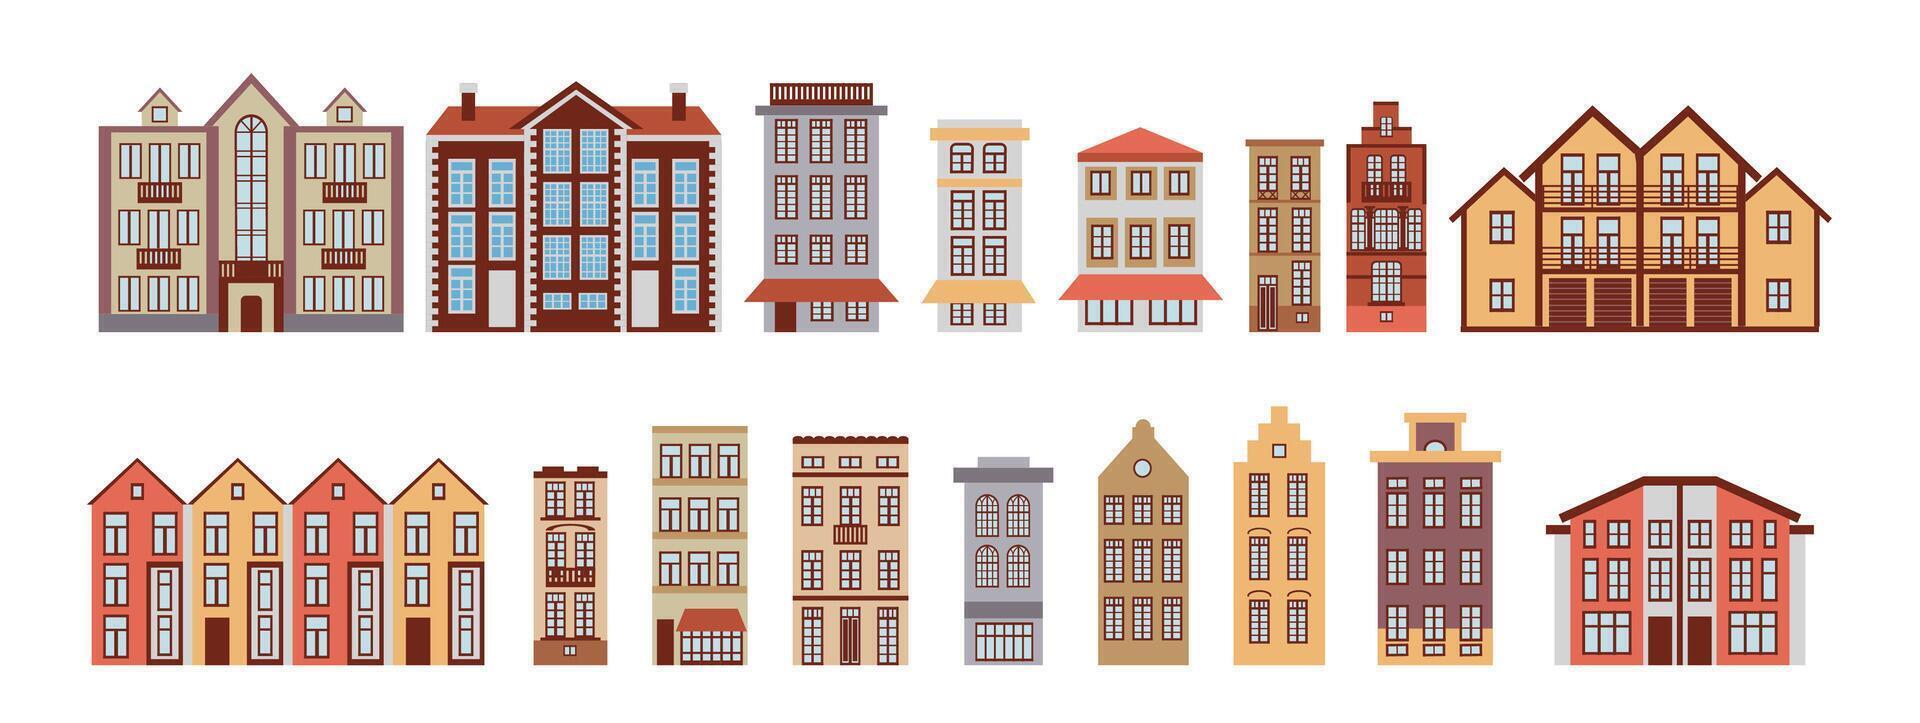 uppsättning av modern och gammal byggnader, element av urban infrastruktur, en stuga by, en stad gata, ett gammal stad, samling av ikoner, illustrationer i en platt stil. vektor